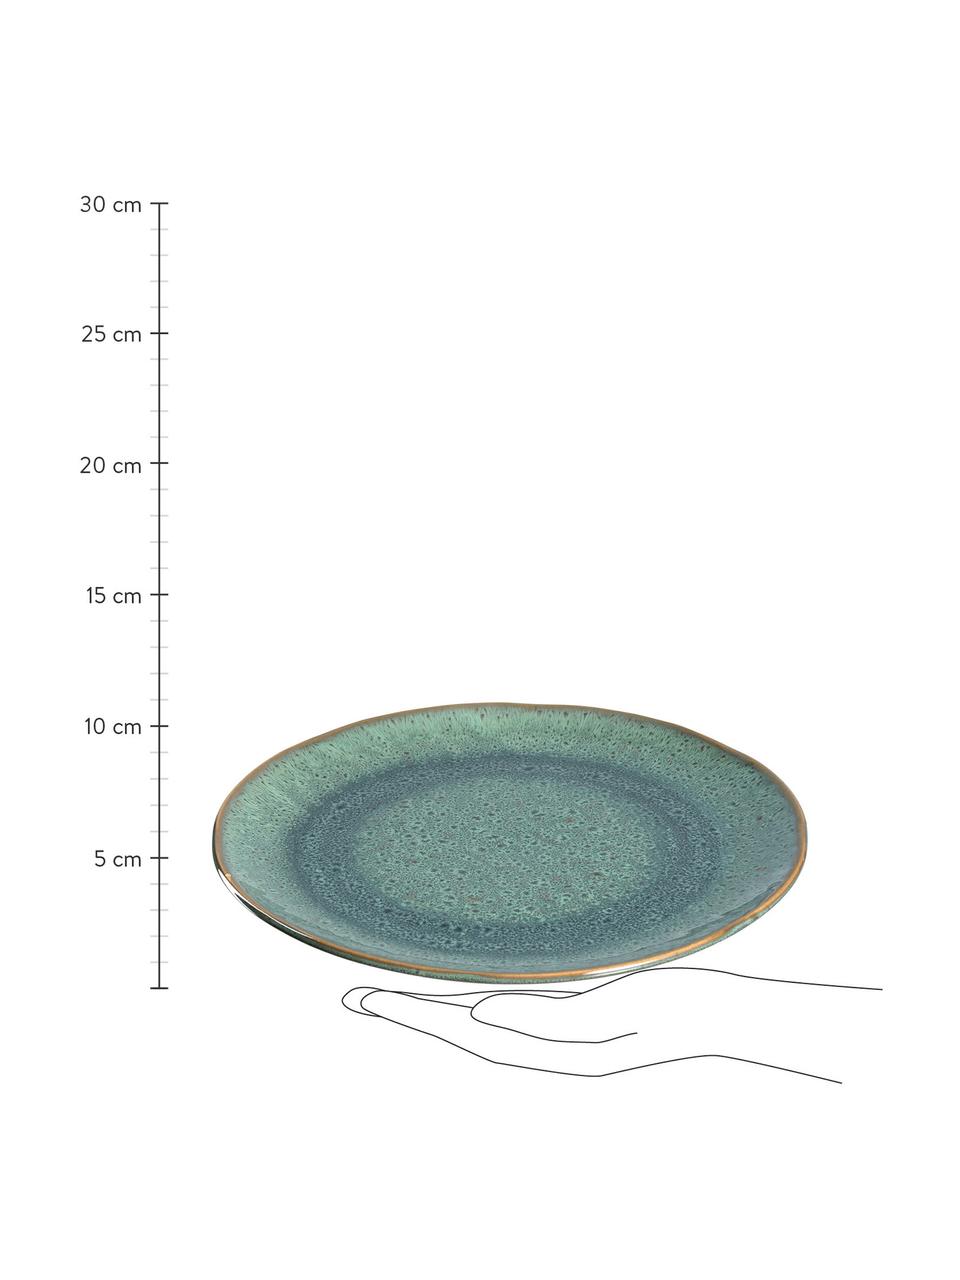 Snídaňový talíř s barevným přechodem a hrbolky Matera, 6 ks, Keramika, Zelená, Ø 23 cm, V 2 cm